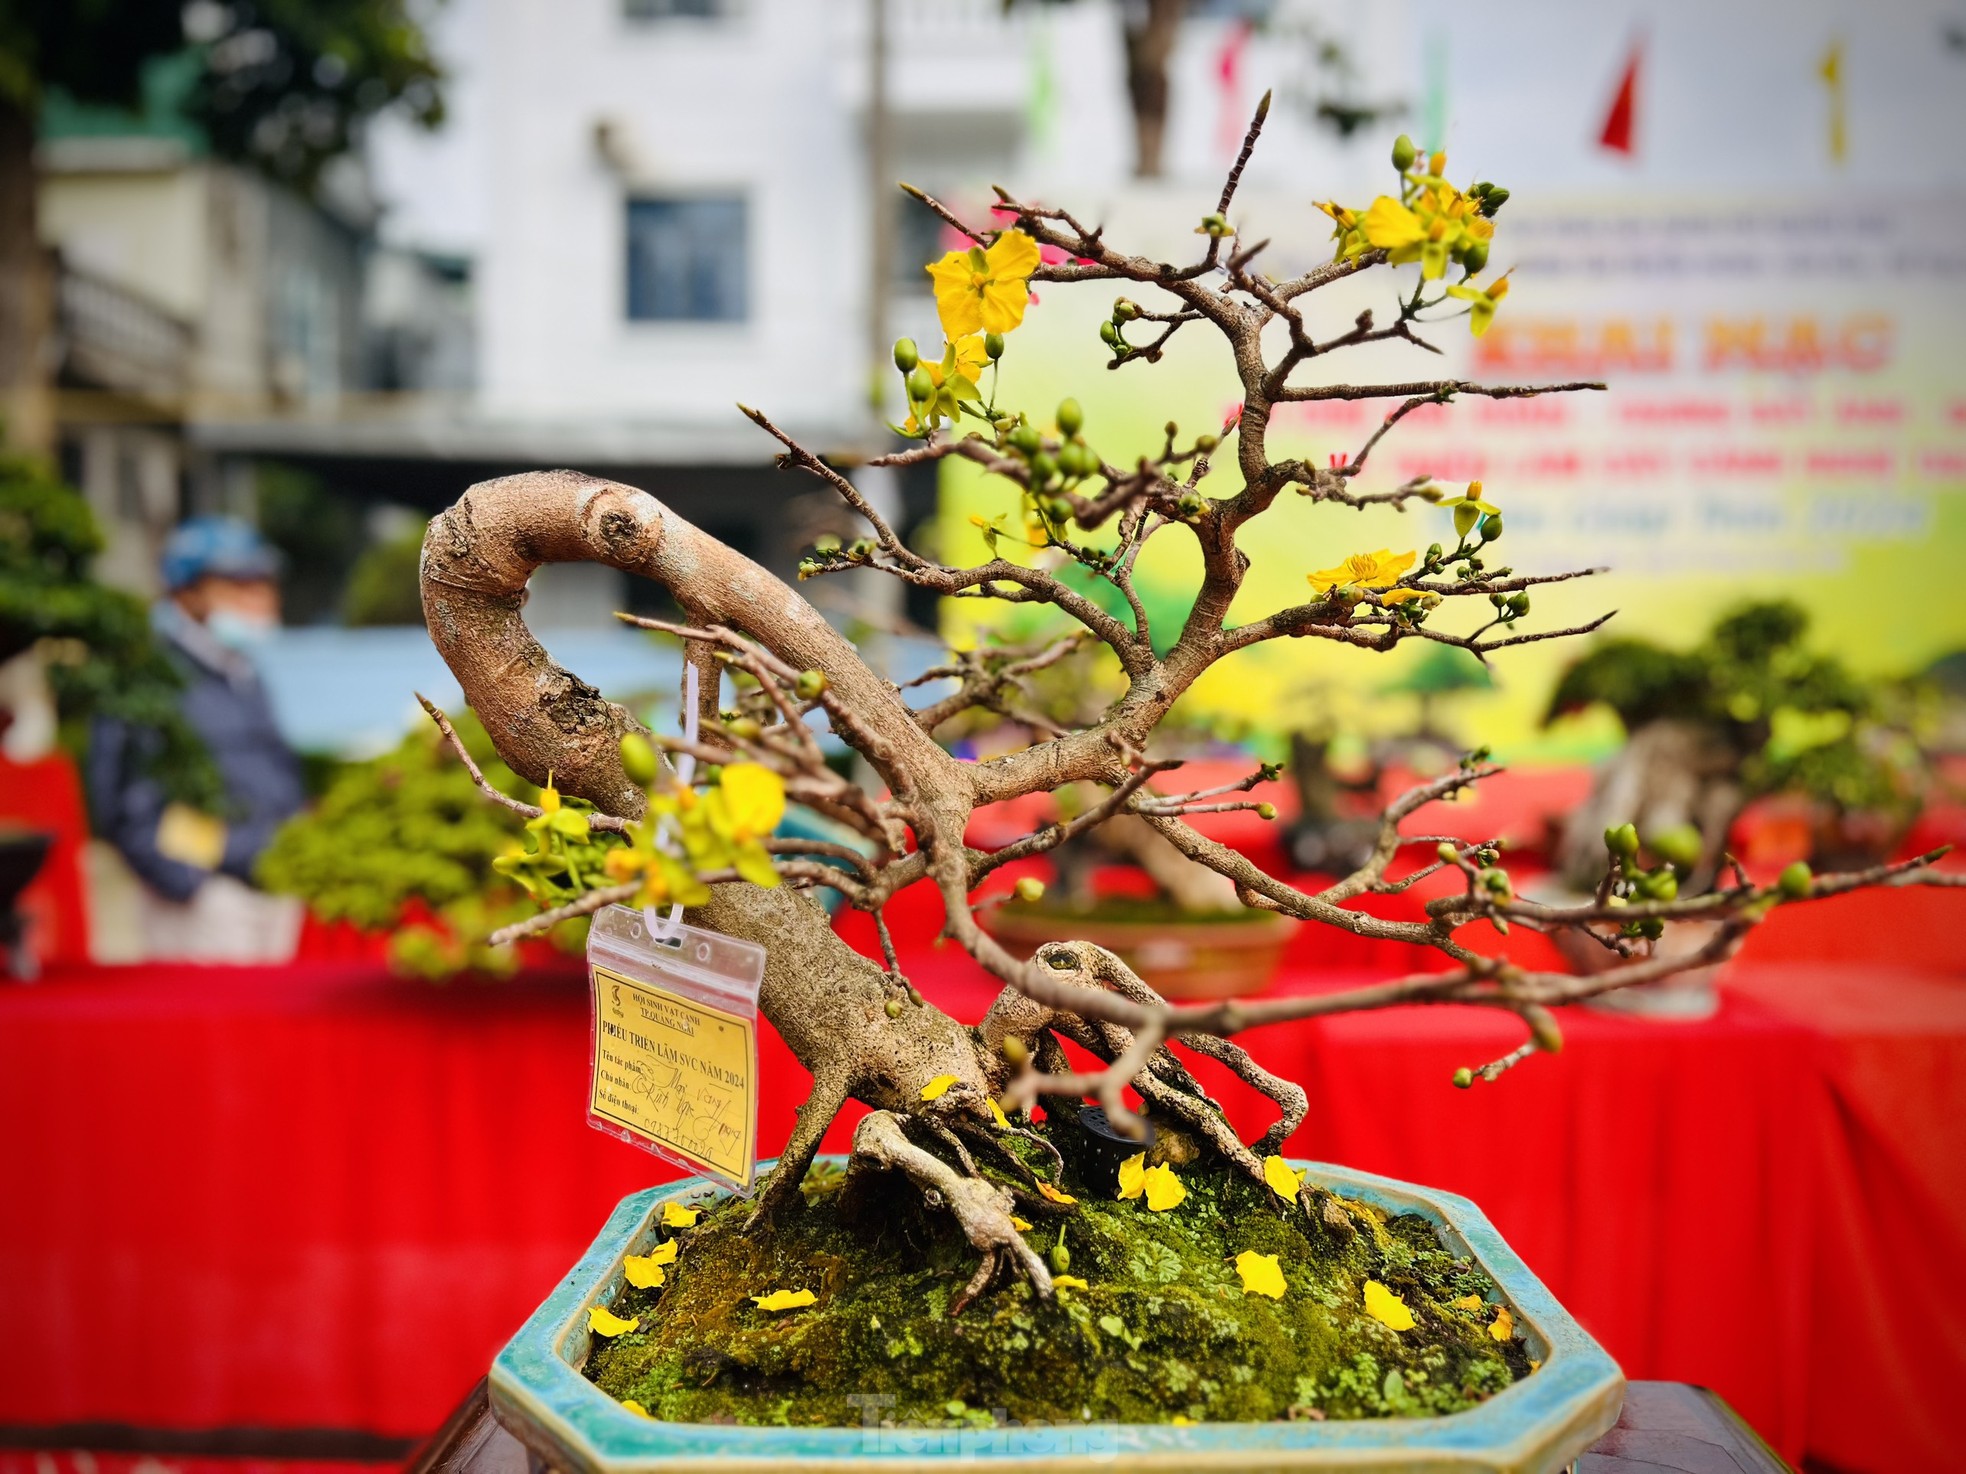 Dàn bonsai độc lạ, giá lên đến 500 triệu đồng ở Quảng Ngãi - Ảnh 28.